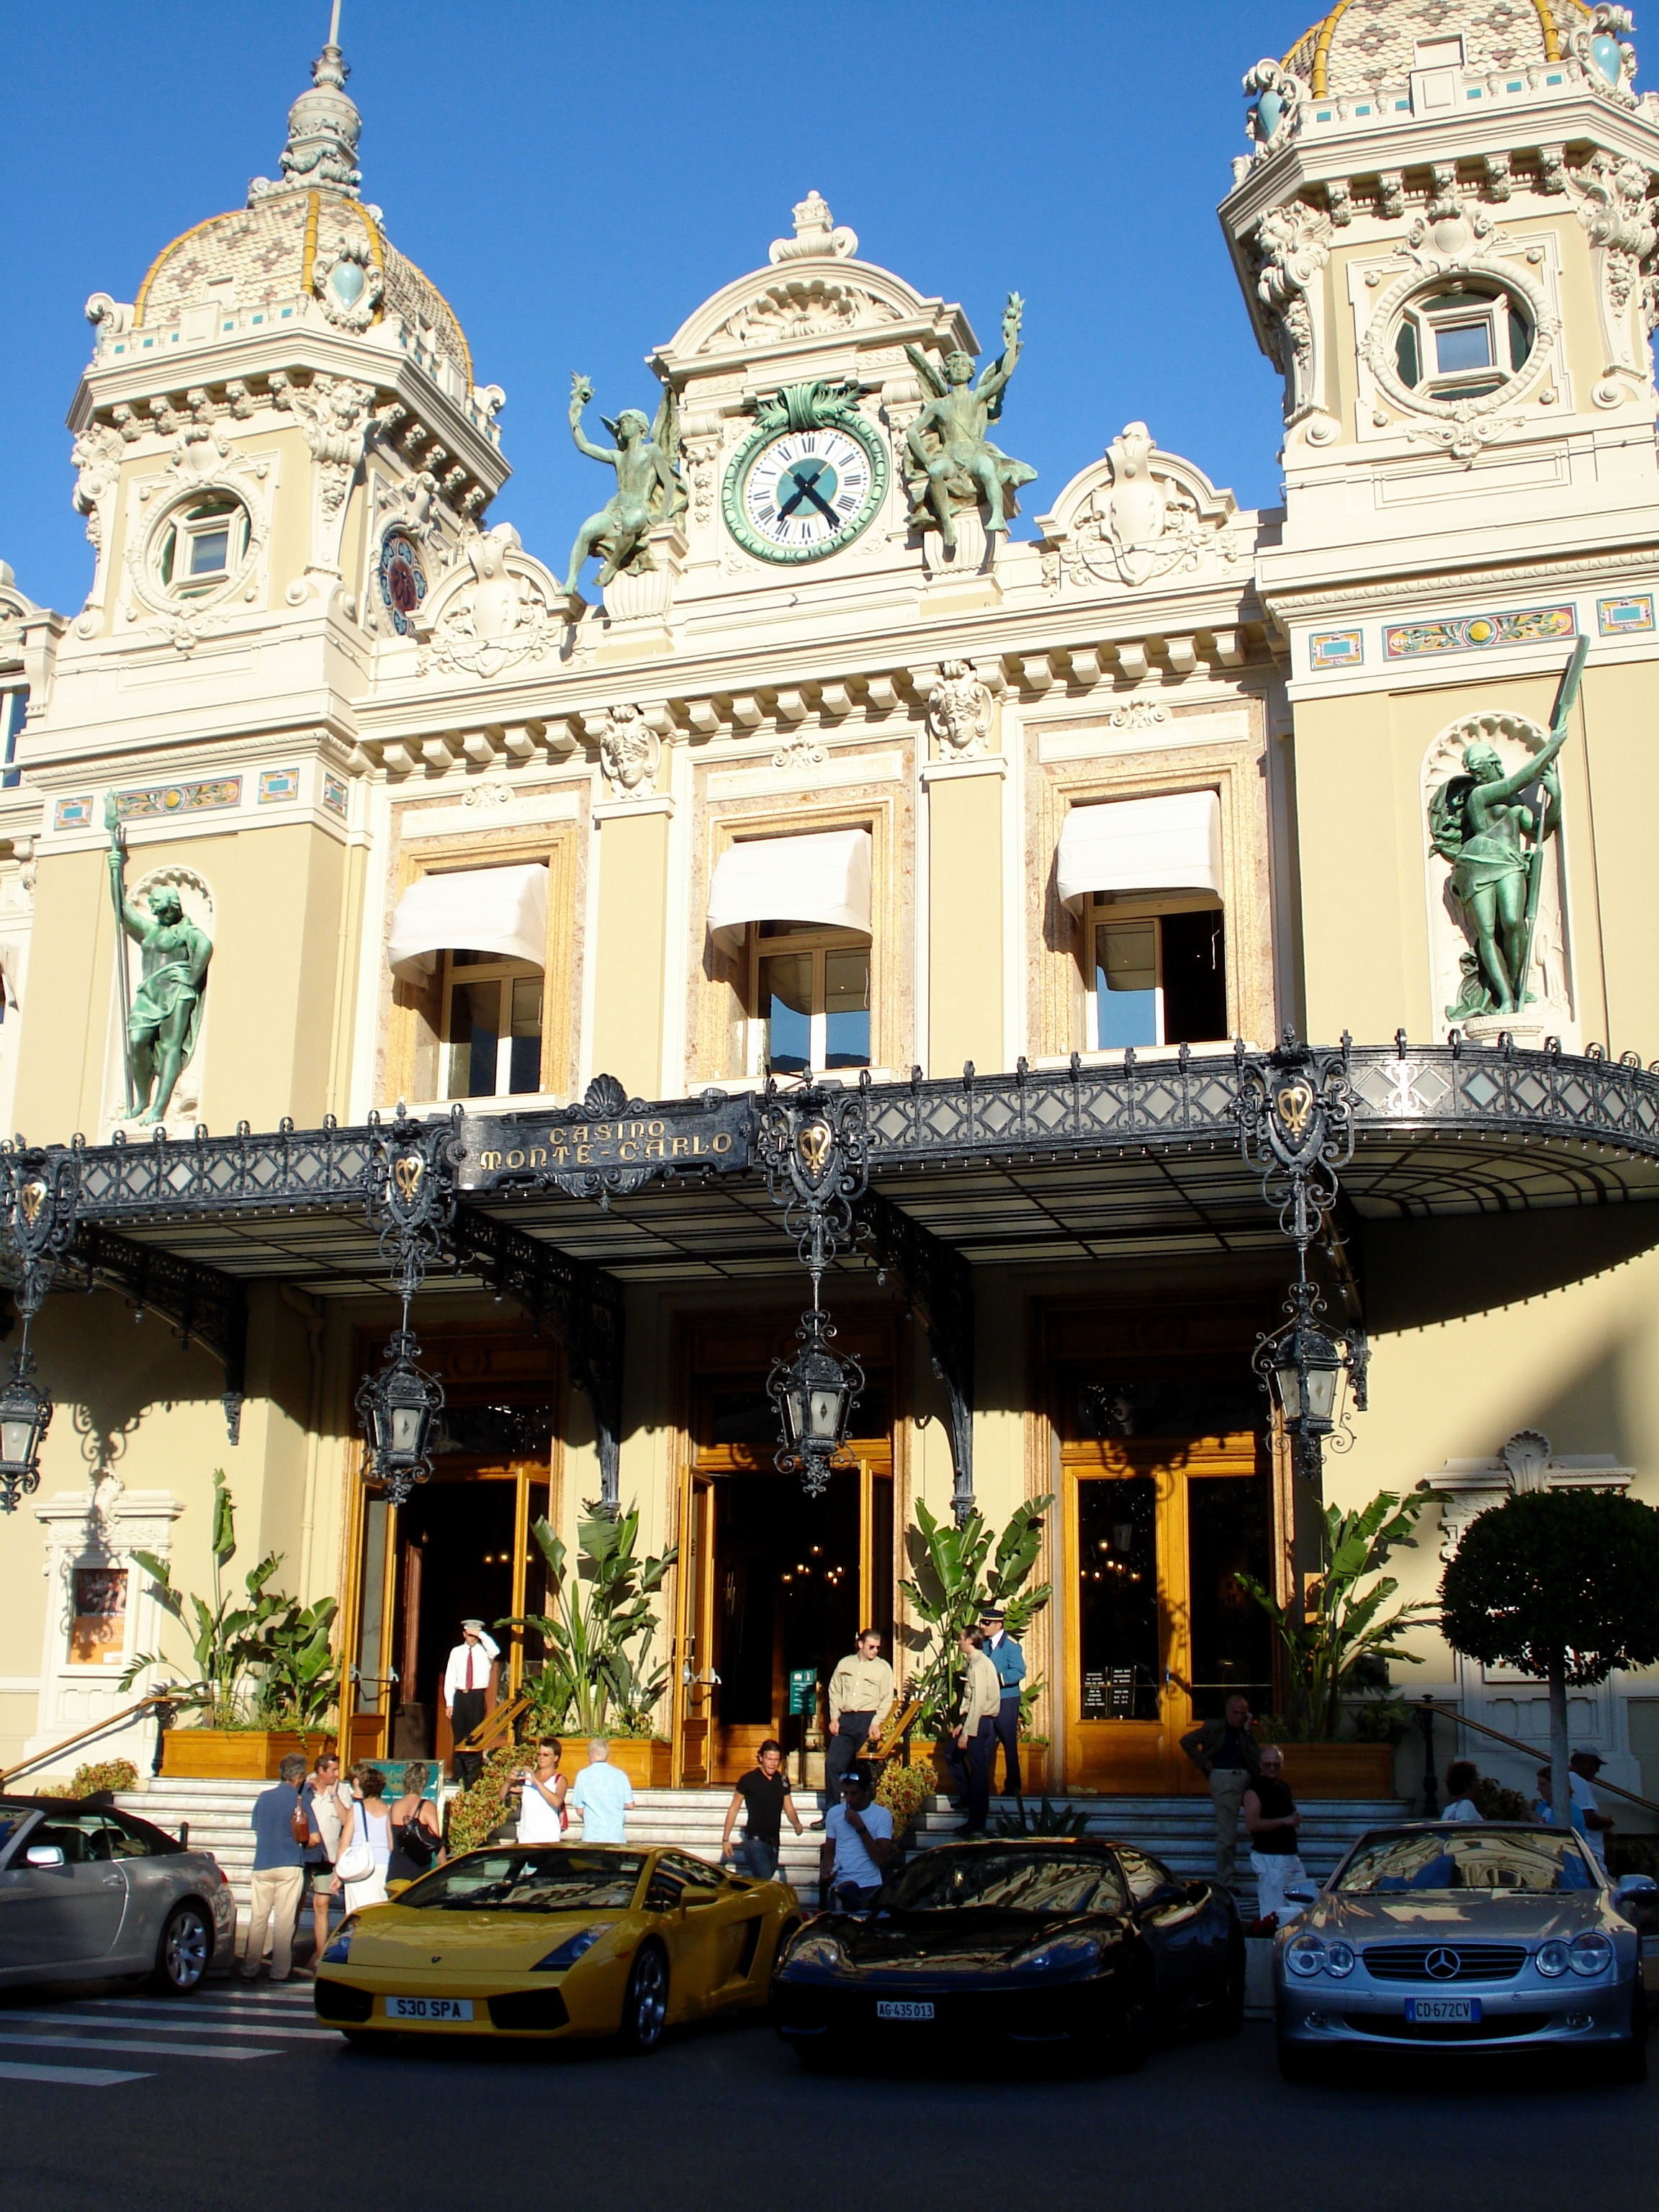 Monte Carlo Online Casino